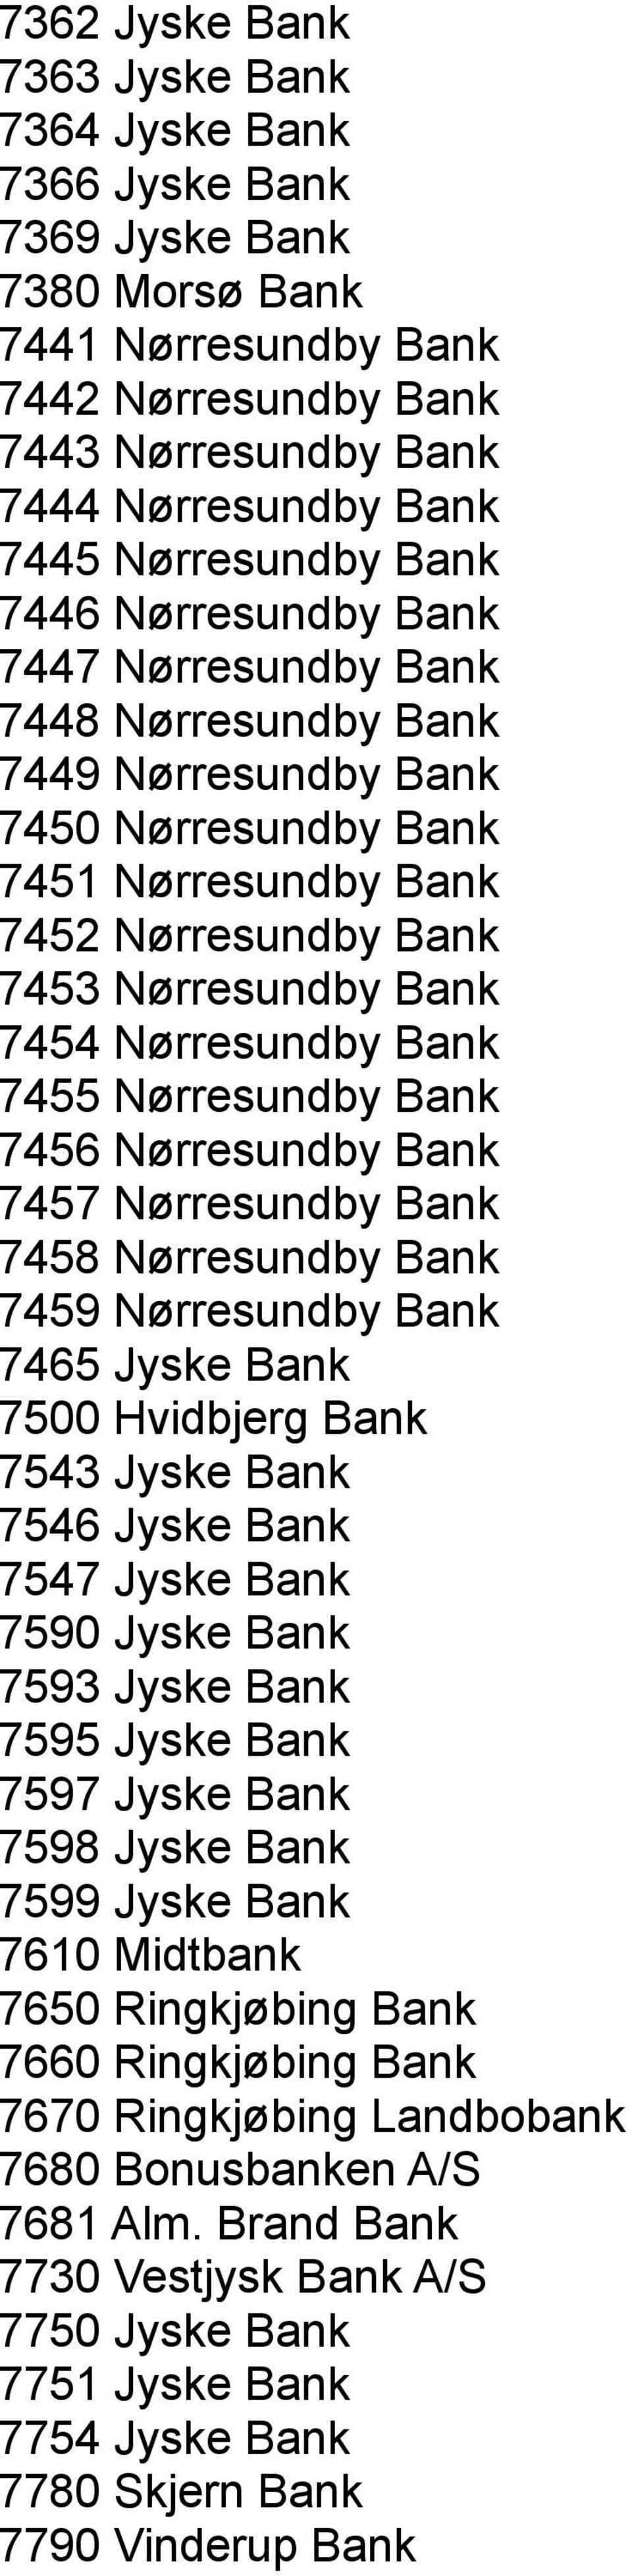 Nørresundby Bank 7455 Nørresundby Bank 7456 Nørresundby Bank 7457 Nørresundby Bank 7458 Nørresundby Bank 7459 Nørresundby Bank 7465 Jyske Bank 7500 Hvidbjerg Bank 7543 Jyske Bank 7546 Jyske Bank 7547